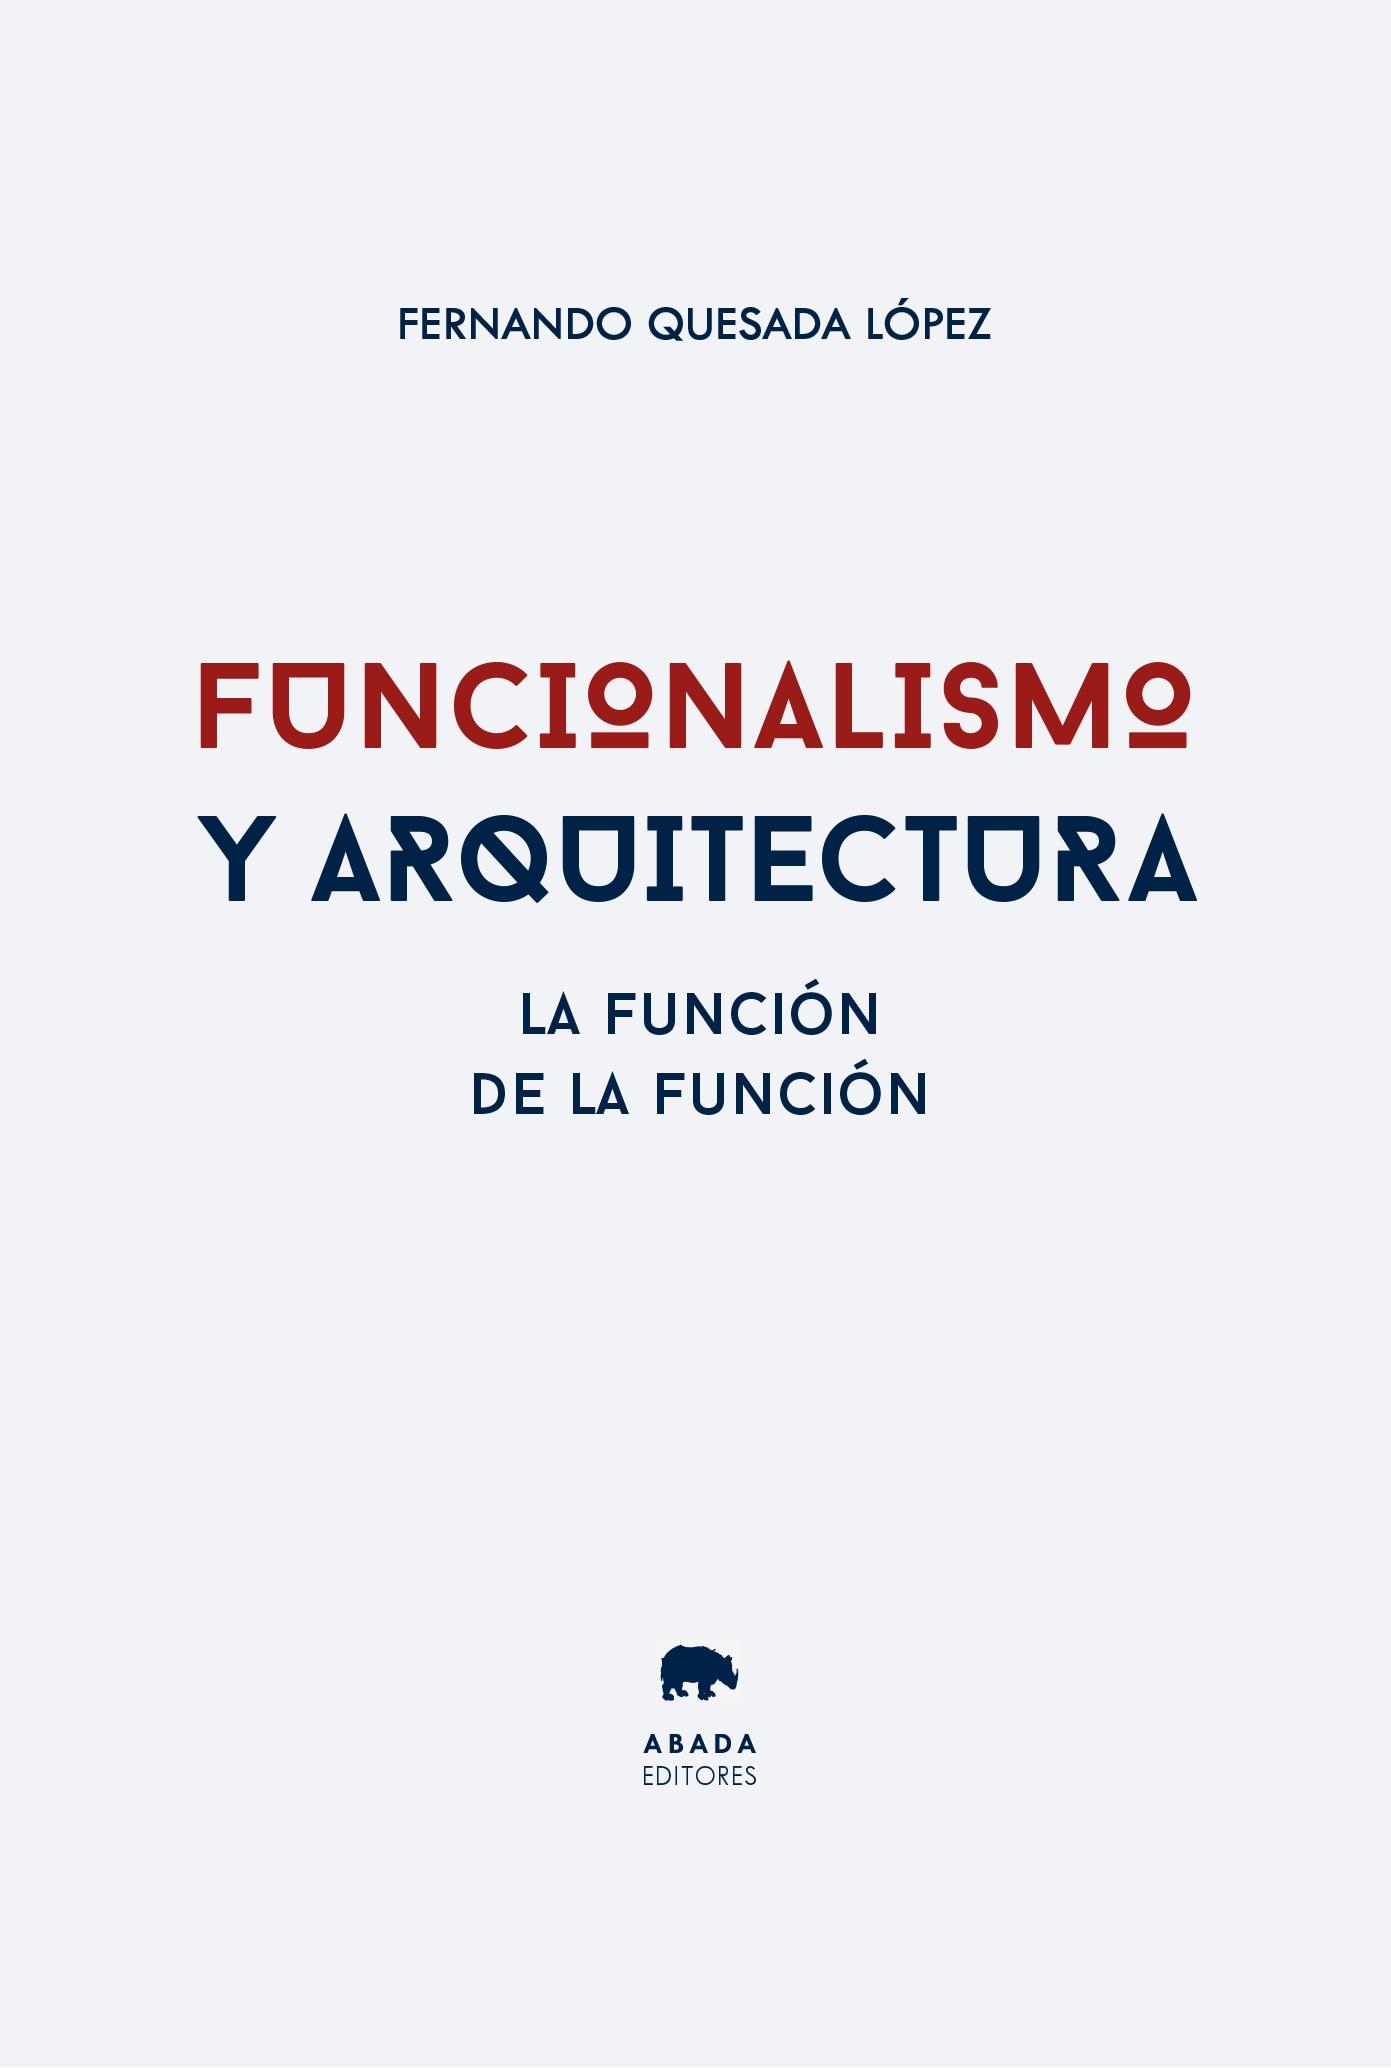 FUNCIONALISMO Y ARQUITECTURA "LA FUNCIÓN DE LA FUNCION". 